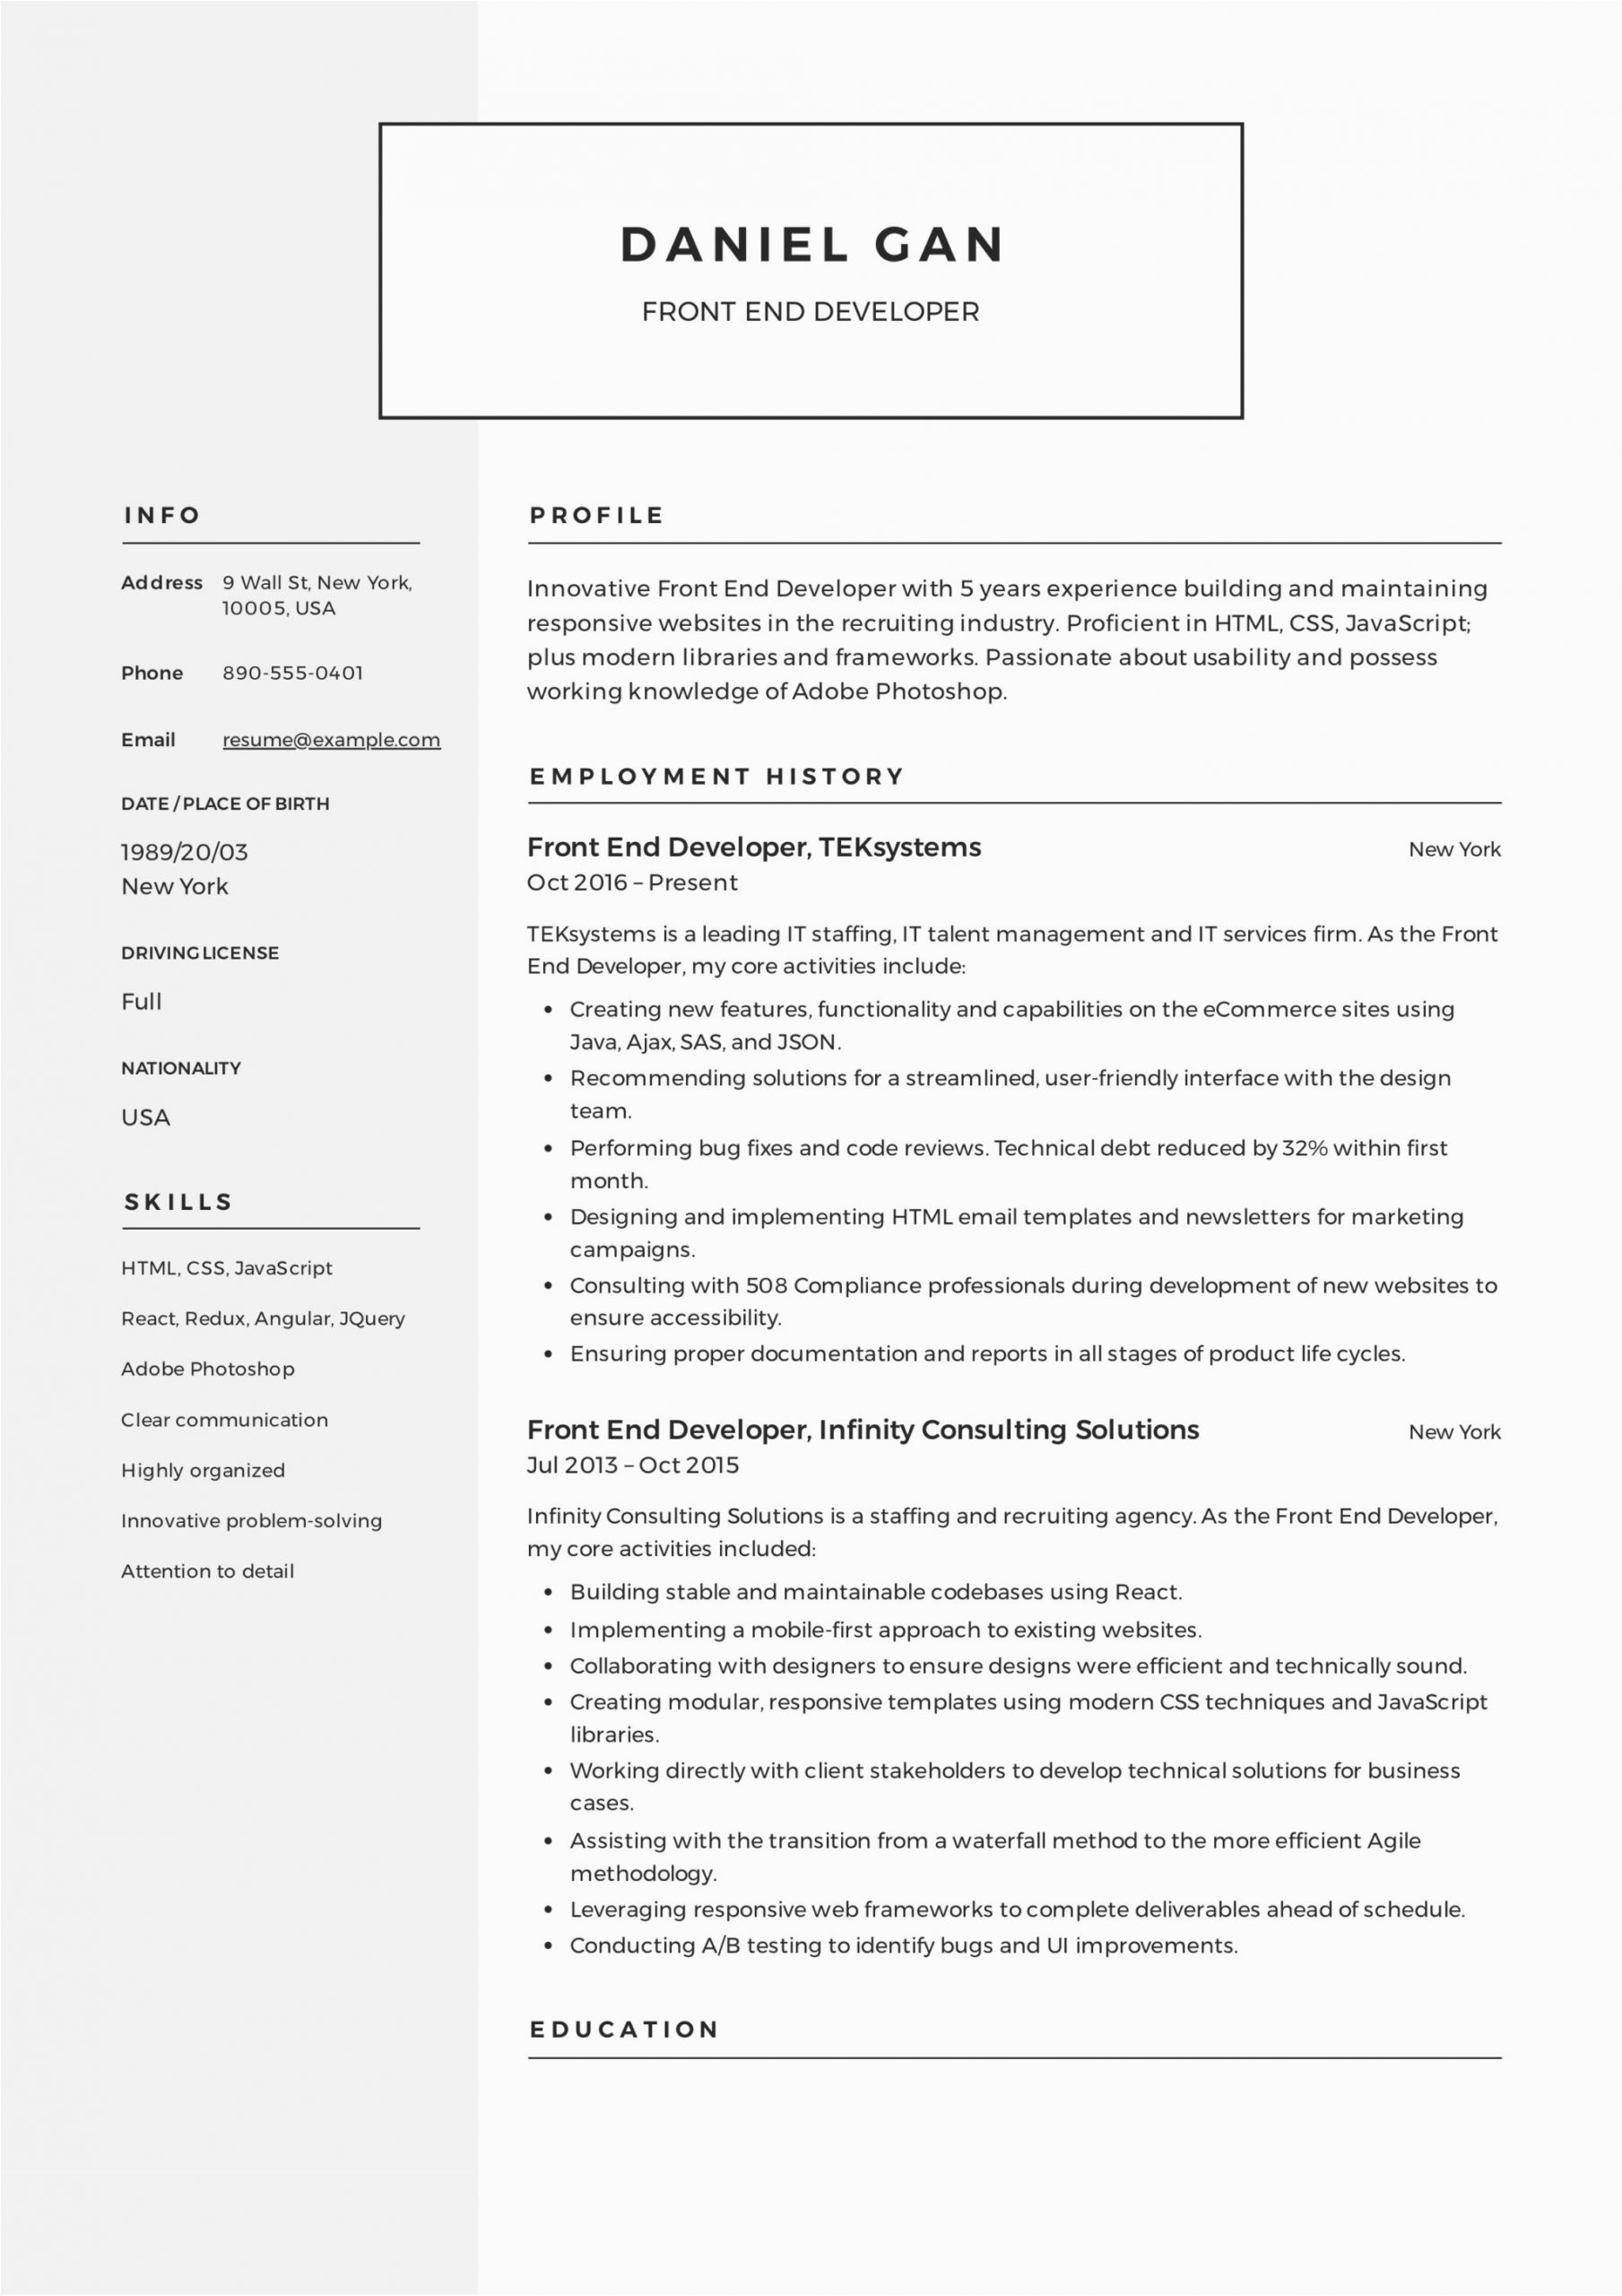 Sample Resume Front End Web Developer Front End Developer Resume Guide & Sample – Resumeviking